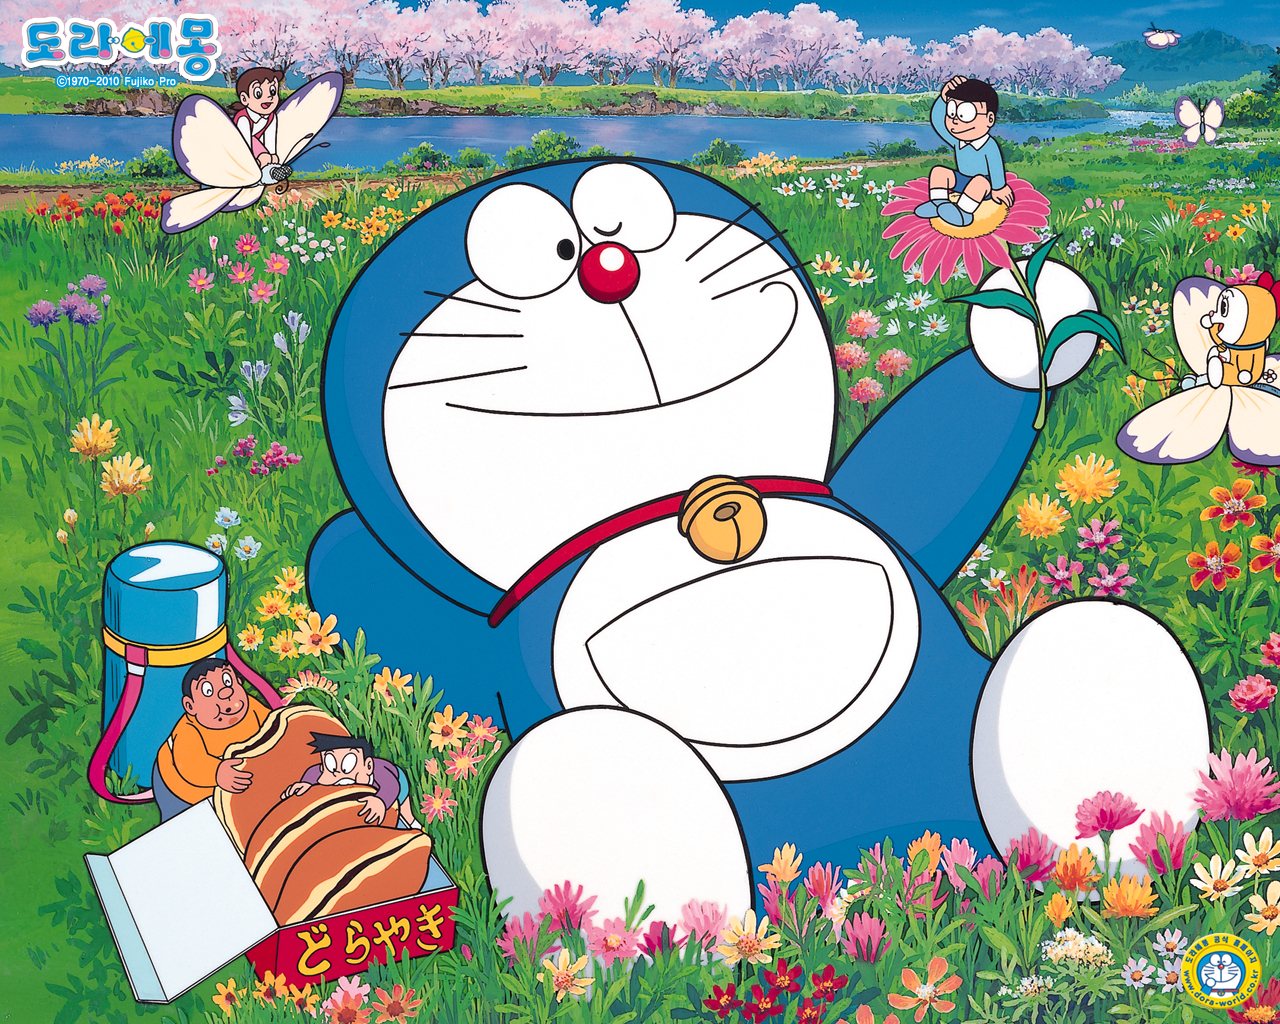 Nếu bạn đang tìm kiếm những hình nền Doraemon tuyệt vời, hãy tải chúng ngay từ internet. Điều này sẽ giúp bạn làm cho màn hình máy tính của mình trở nên đa dạng và sinh động hơn bao giờ hết, và bạn sẽ tận hưởng những giây phút thư giãn trên chiếc máy tính của mình.